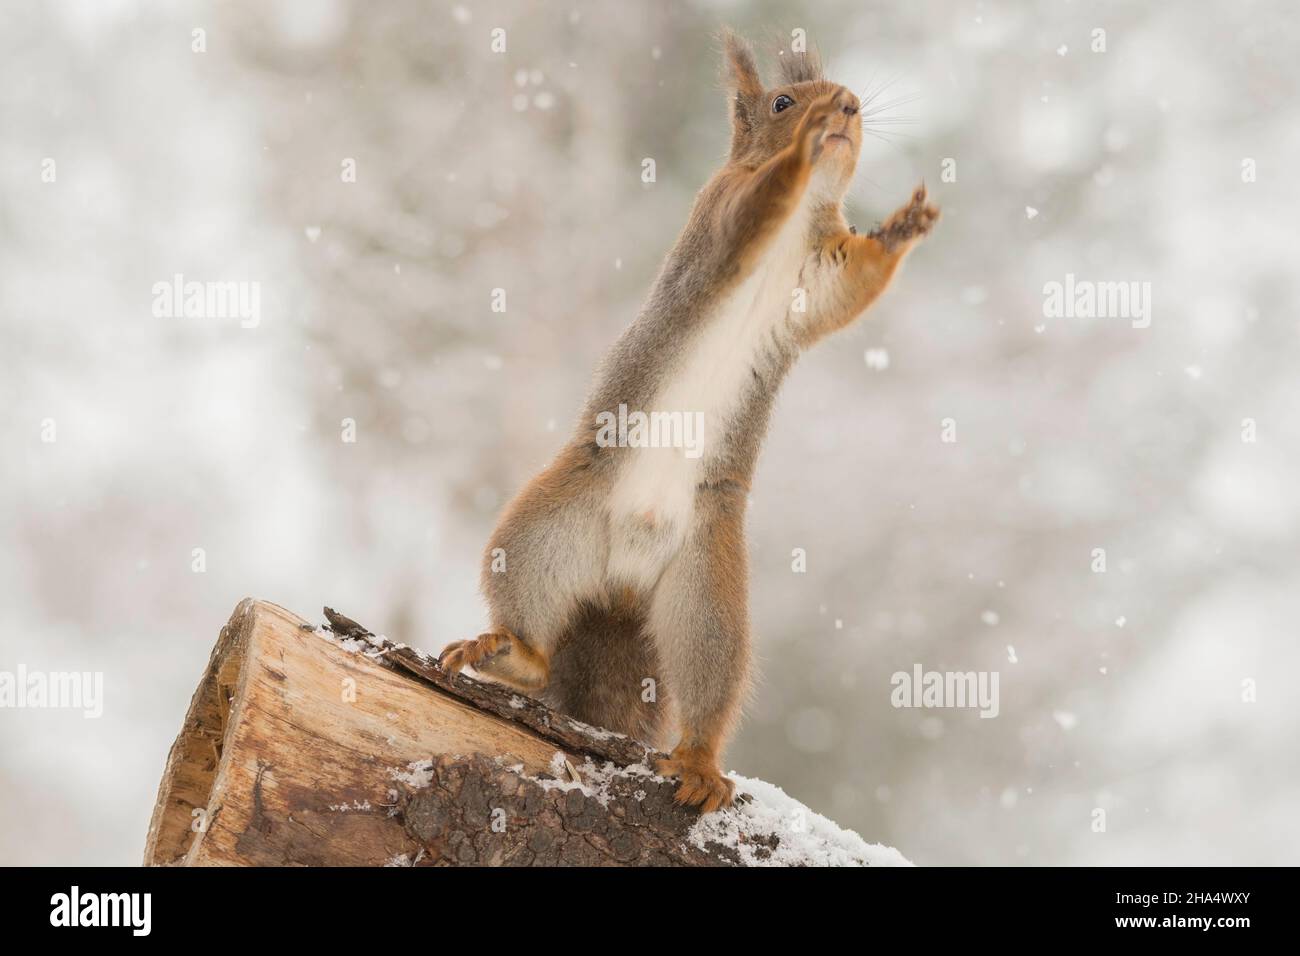 Nahaufnahme eines roten Eichhörnchens, das auf einem Baumstamm im Schnee steht und sich nach oben streckt Stockfoto